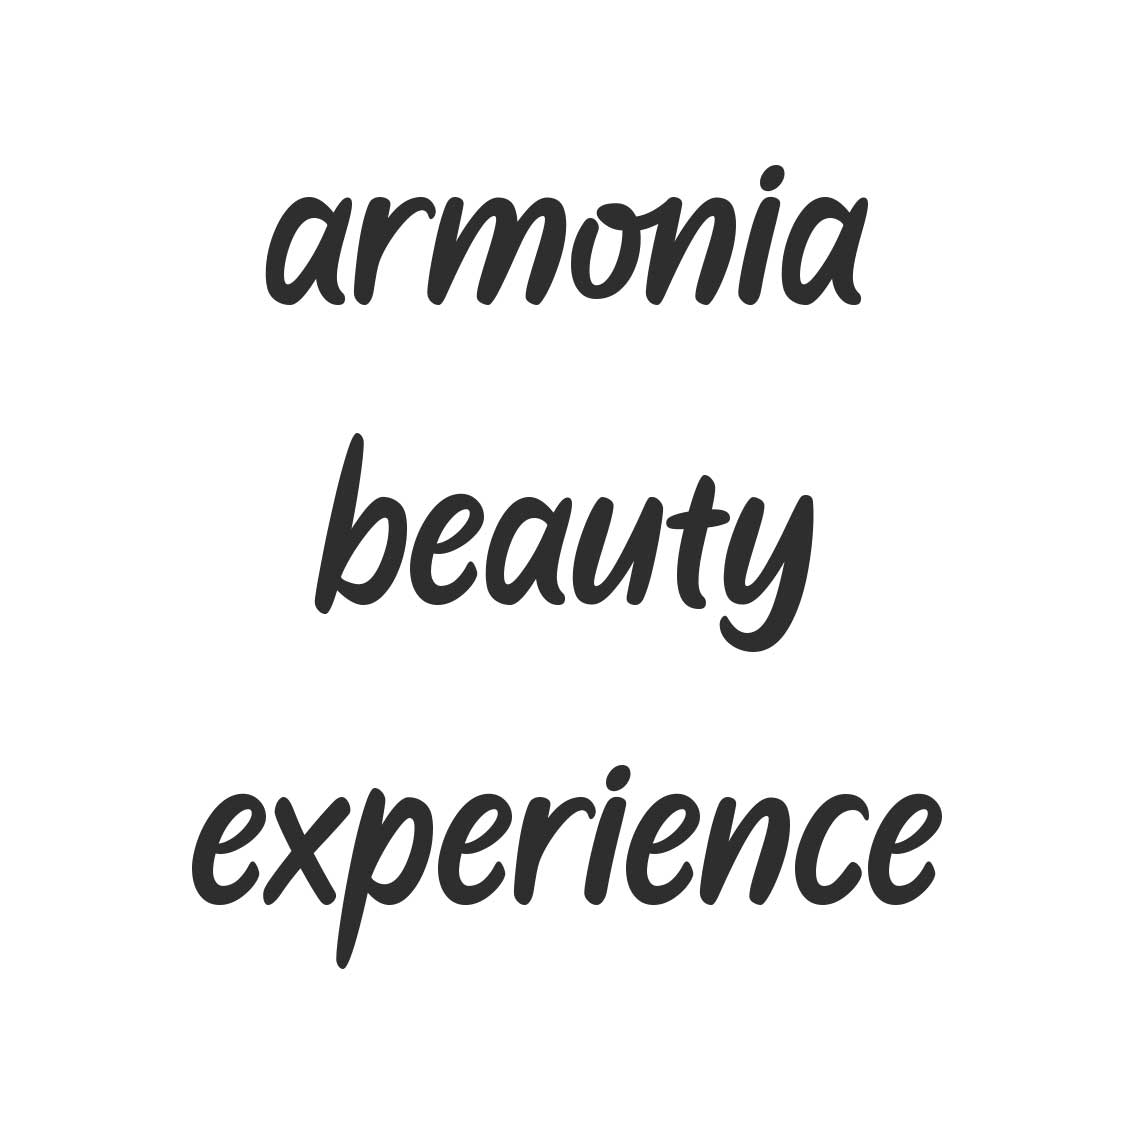 ARMONIA BEAUTY EXPERIENCE